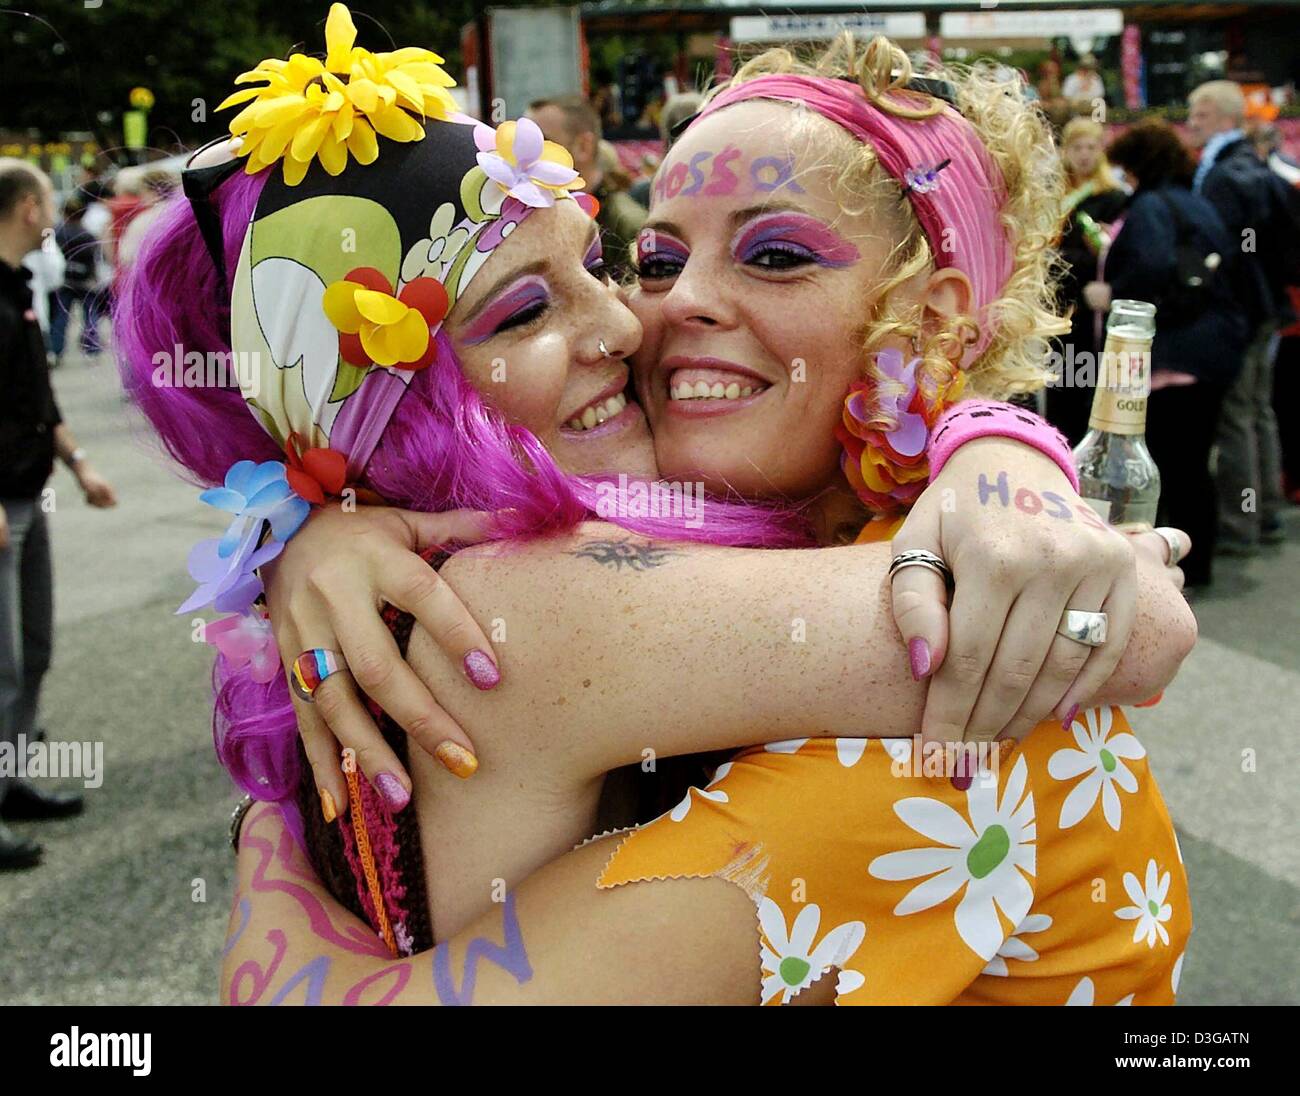 (Afp) - Deux jeunes femmes vêtues de couleurs vives s'embrassent comme ils dansent dans les rues au cours de la parade Schlagermove Hambourg Reeperbahn, le long de l'Allemagne, le 3 juillet 2004. Le plus grand défilé musique schlager en Allemagne a eu lieu pour la huitième fois, avec quelques 300 000 fans présents. 36 flotteurs musique a introduit le flower power des années 70 retour dans les rues de Hambourg. Banque D'Images